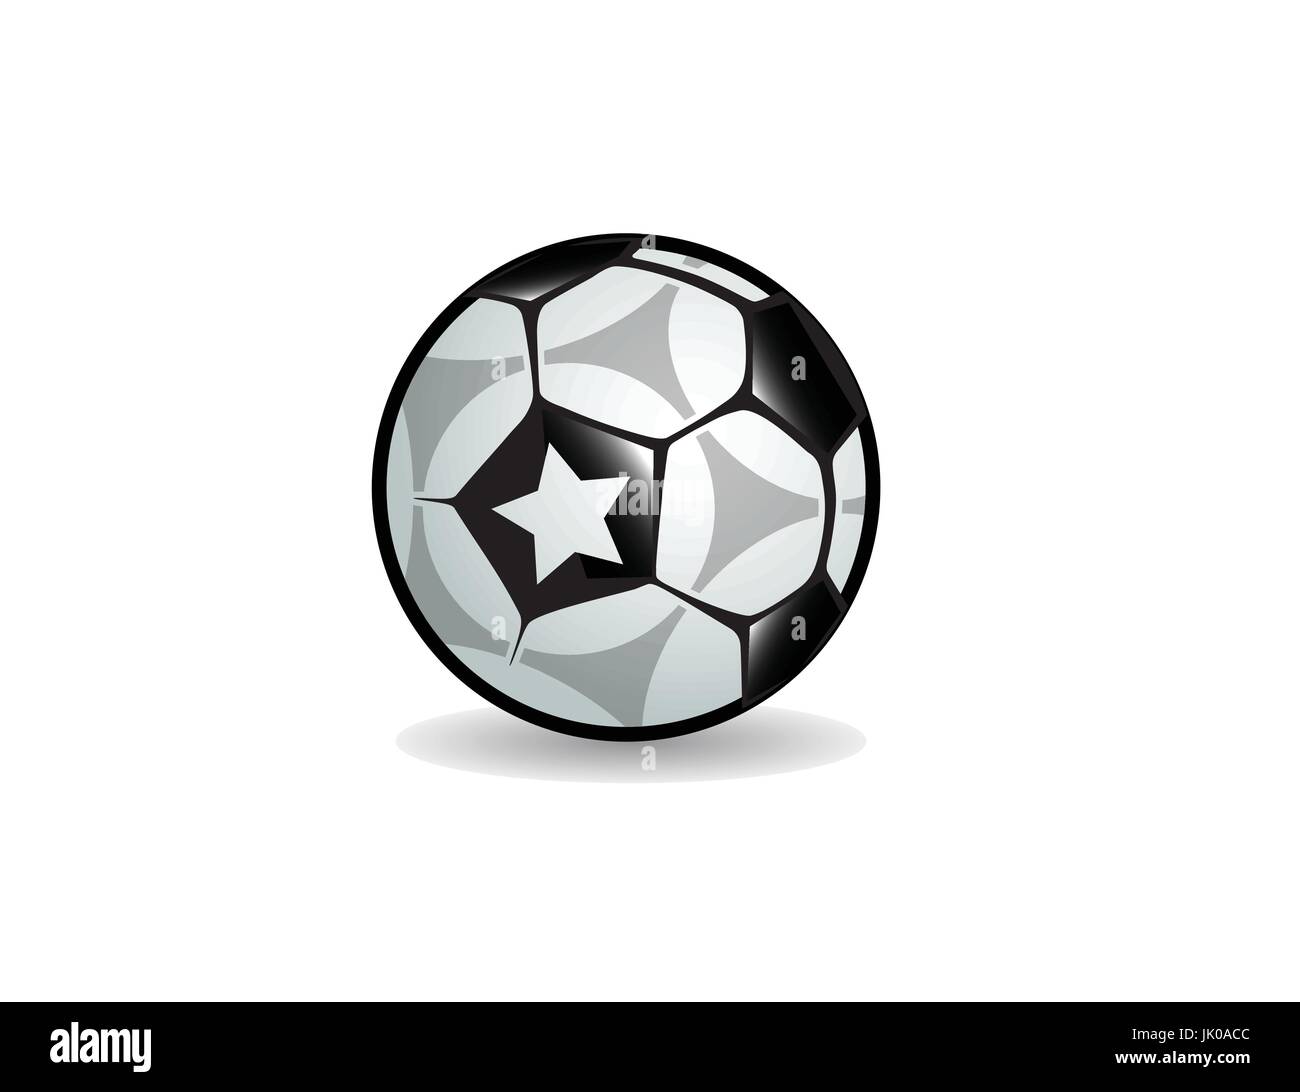 Amerikanischer Fußball, europäischen Fußball-WM pro ball Grafik Icon logo Stock Vektor